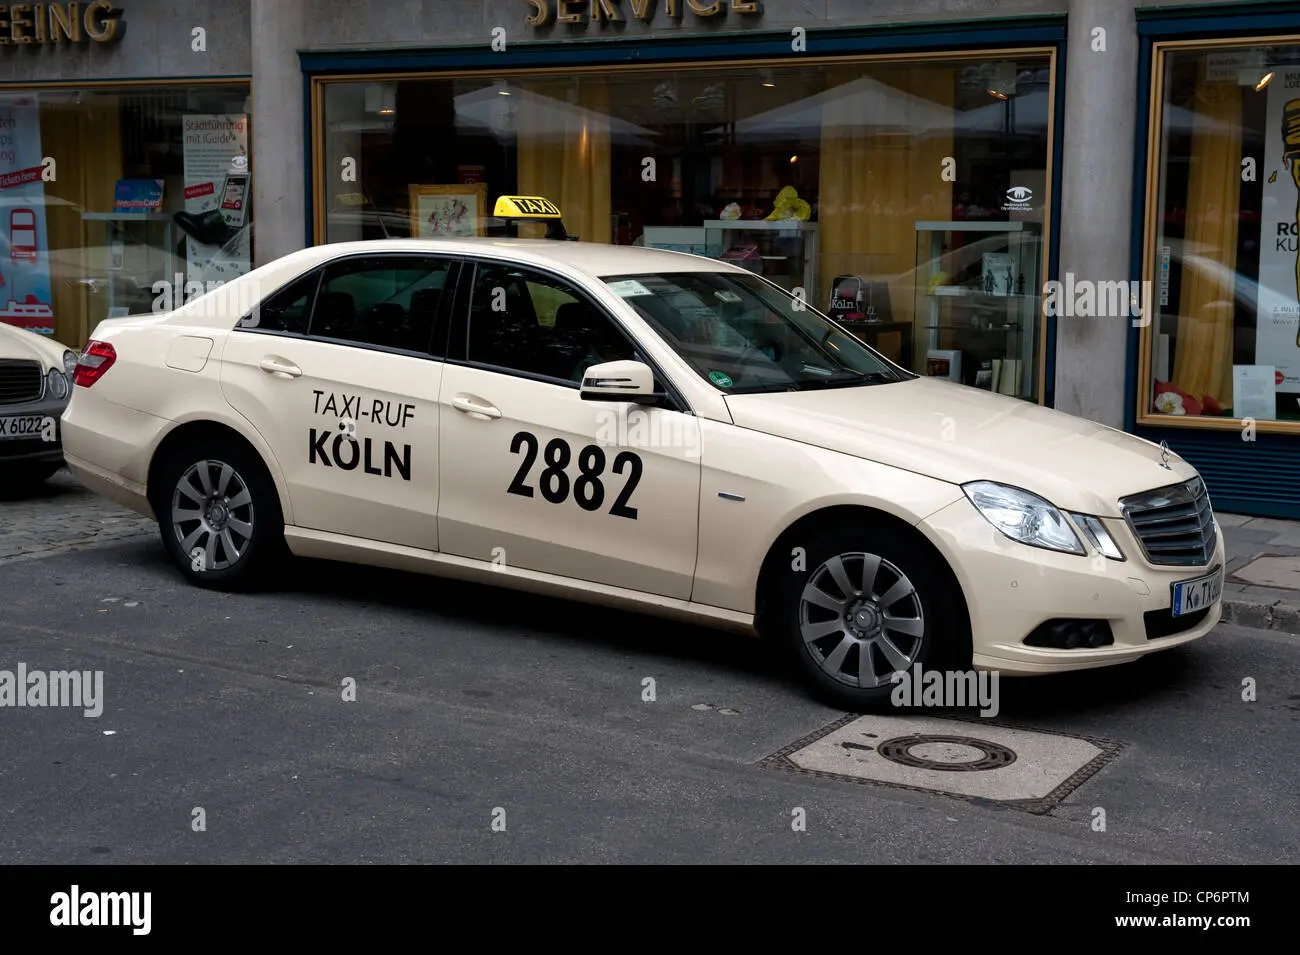 taxi colonia alemania - Cuánto cuesta un taxi en Colonia